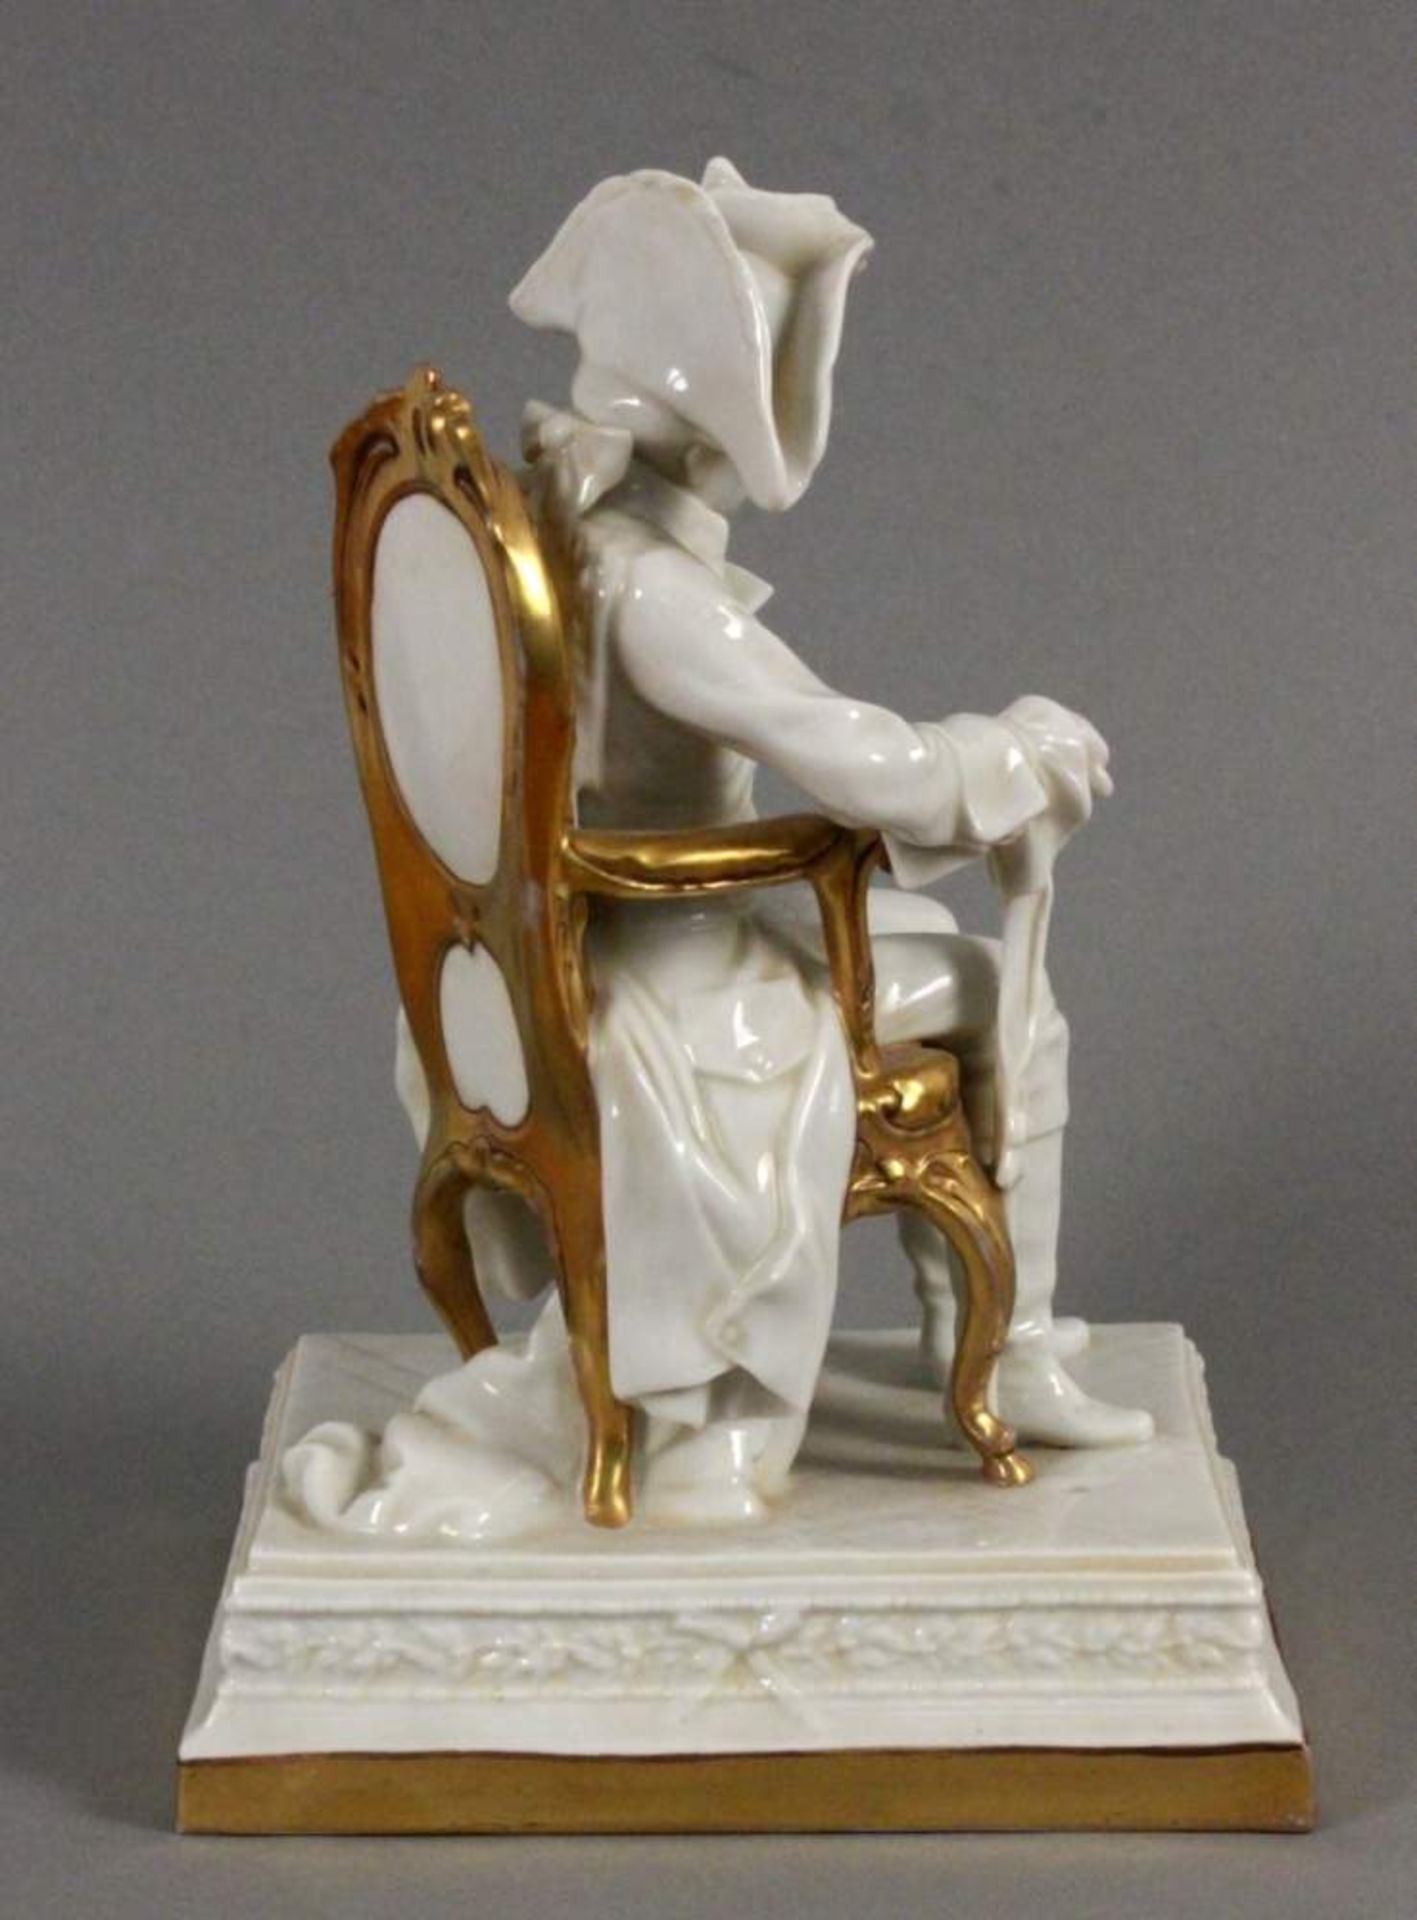 FRIEDRICH II DER GROSSEScheibe-Alsbach Auf einen goldenen Stuhl sitzender preußischer König mit - Bild 2 aus 3